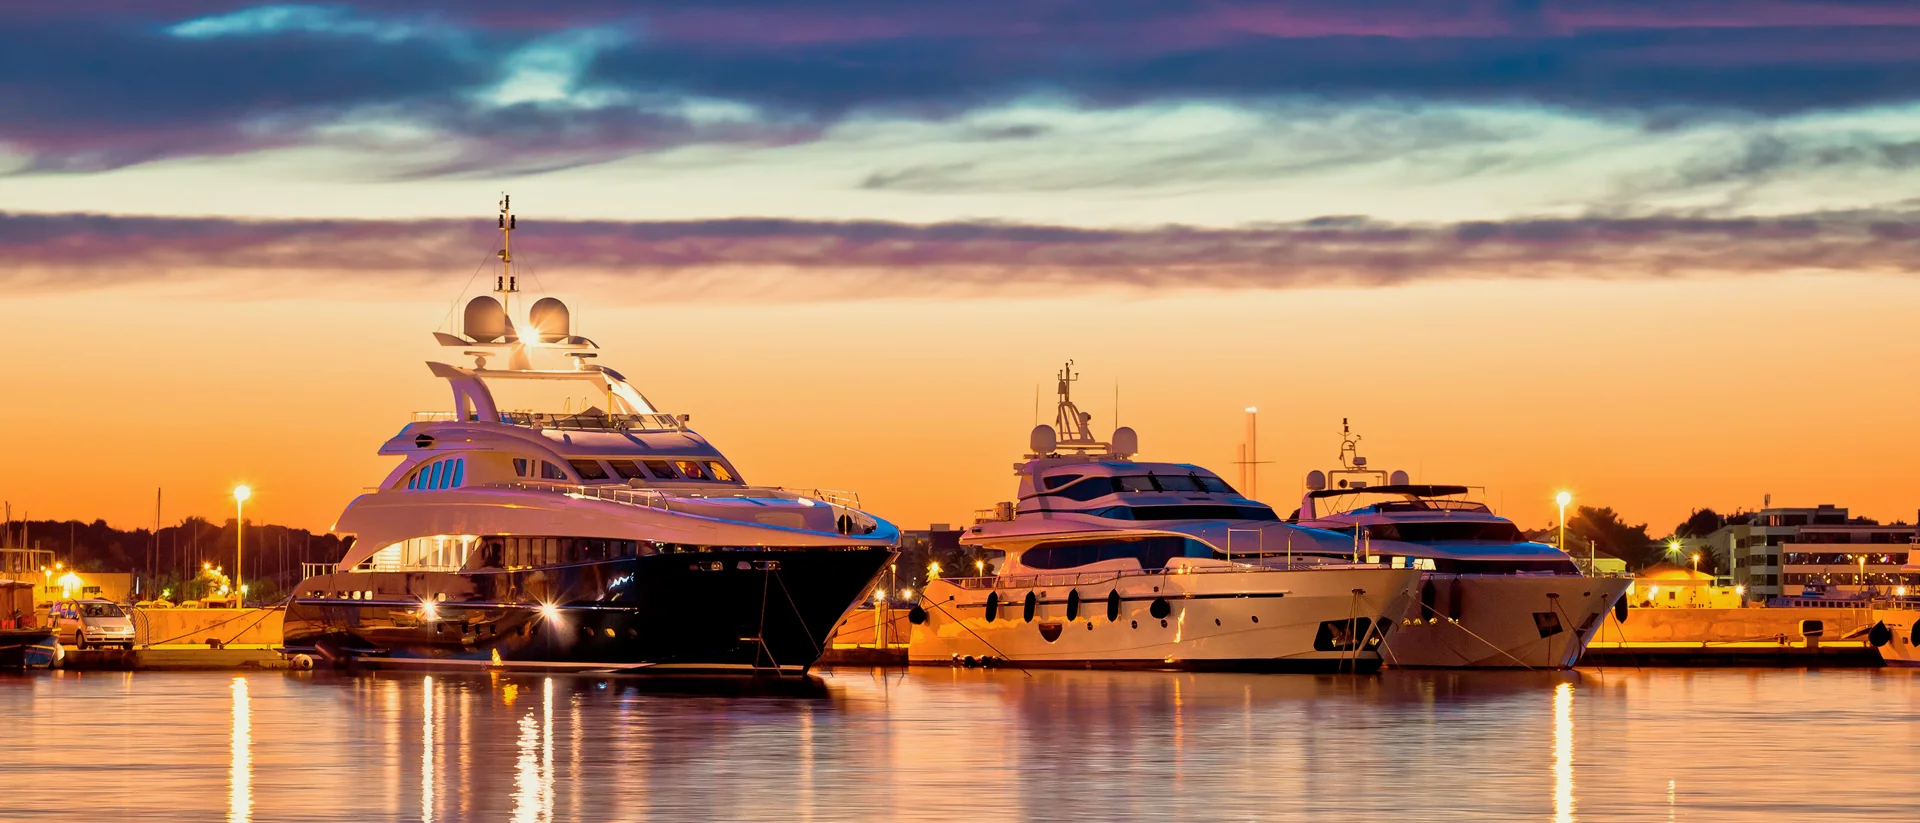 Porto per il noleggio di yacht charter in Bretagna al tramonto